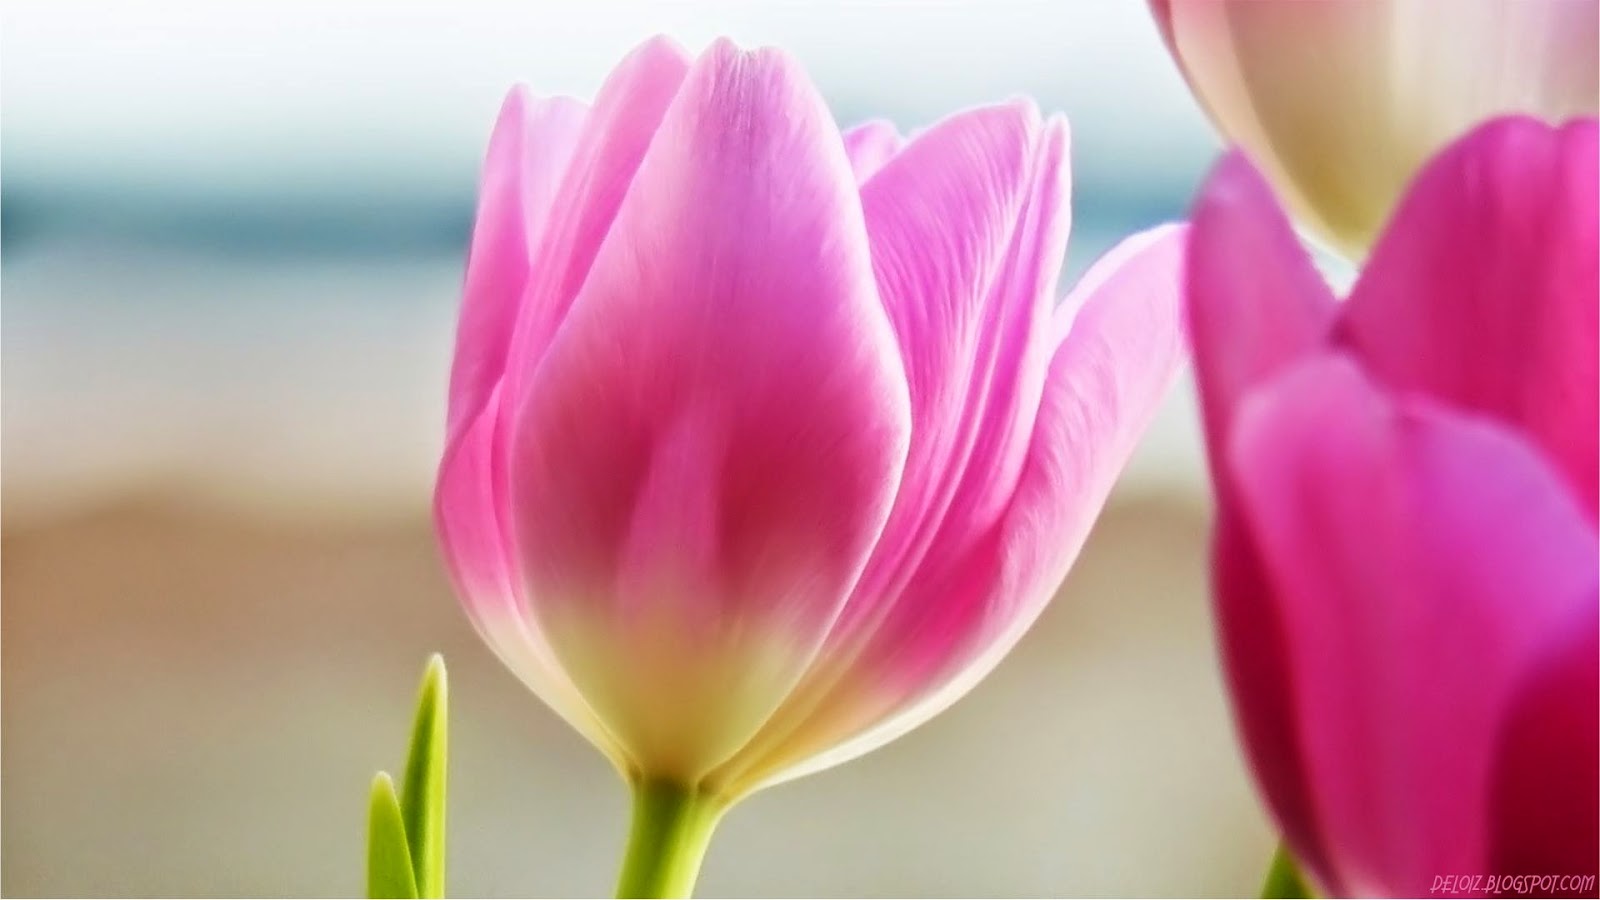 Wallpaper Bunga Tulip Pink